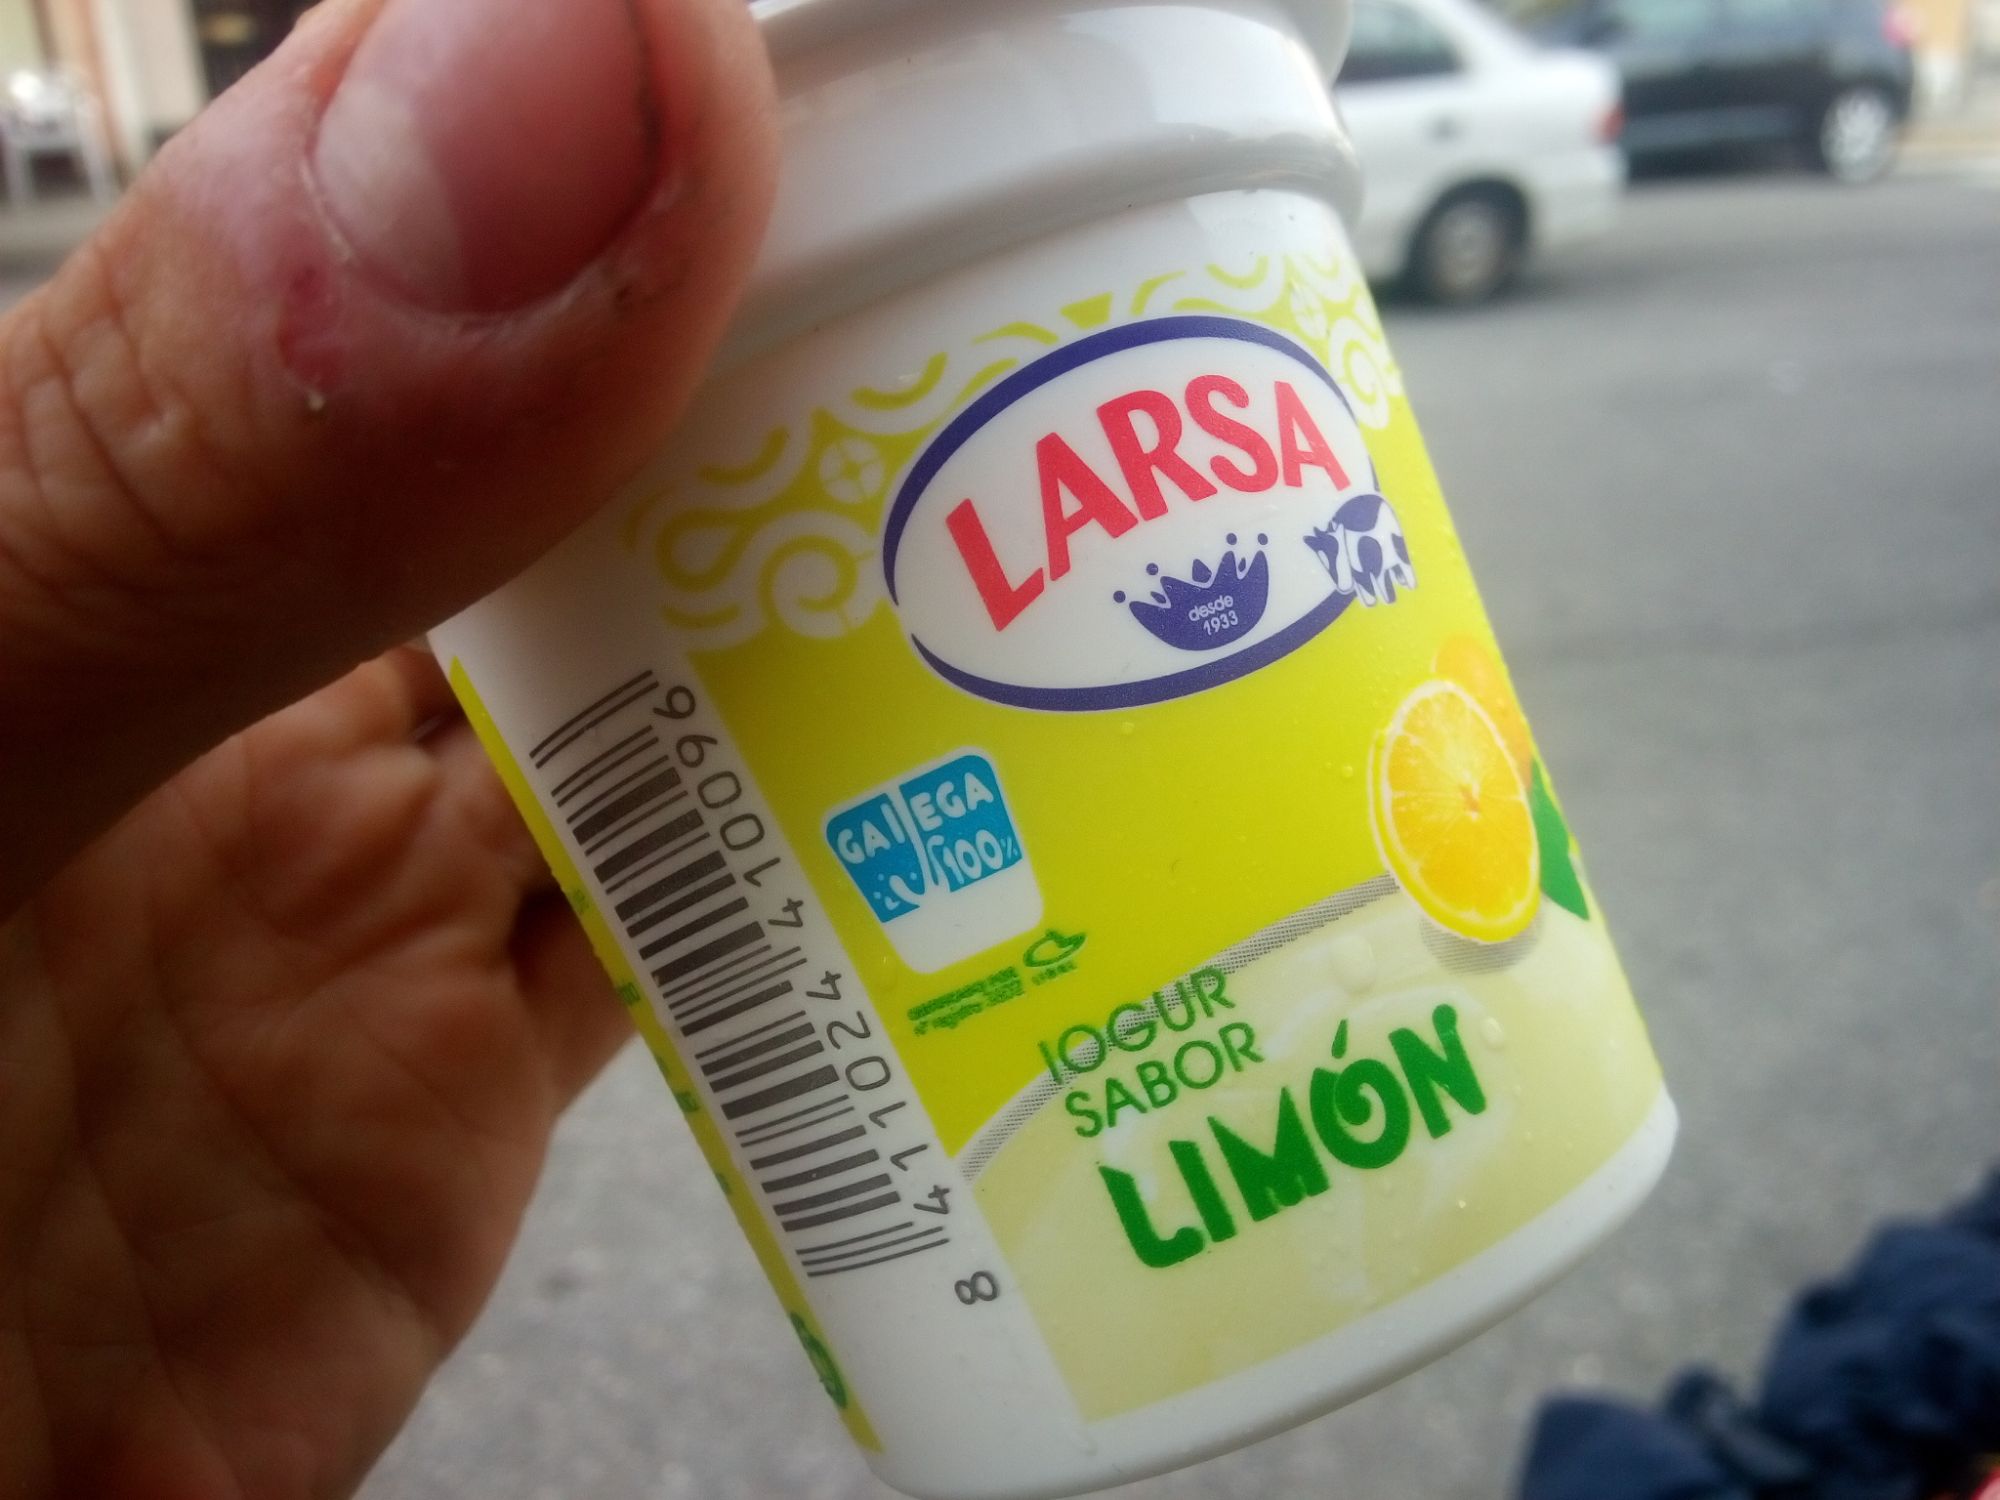 Citrónový jogurtis, tradične potrestaný pred obchodom.